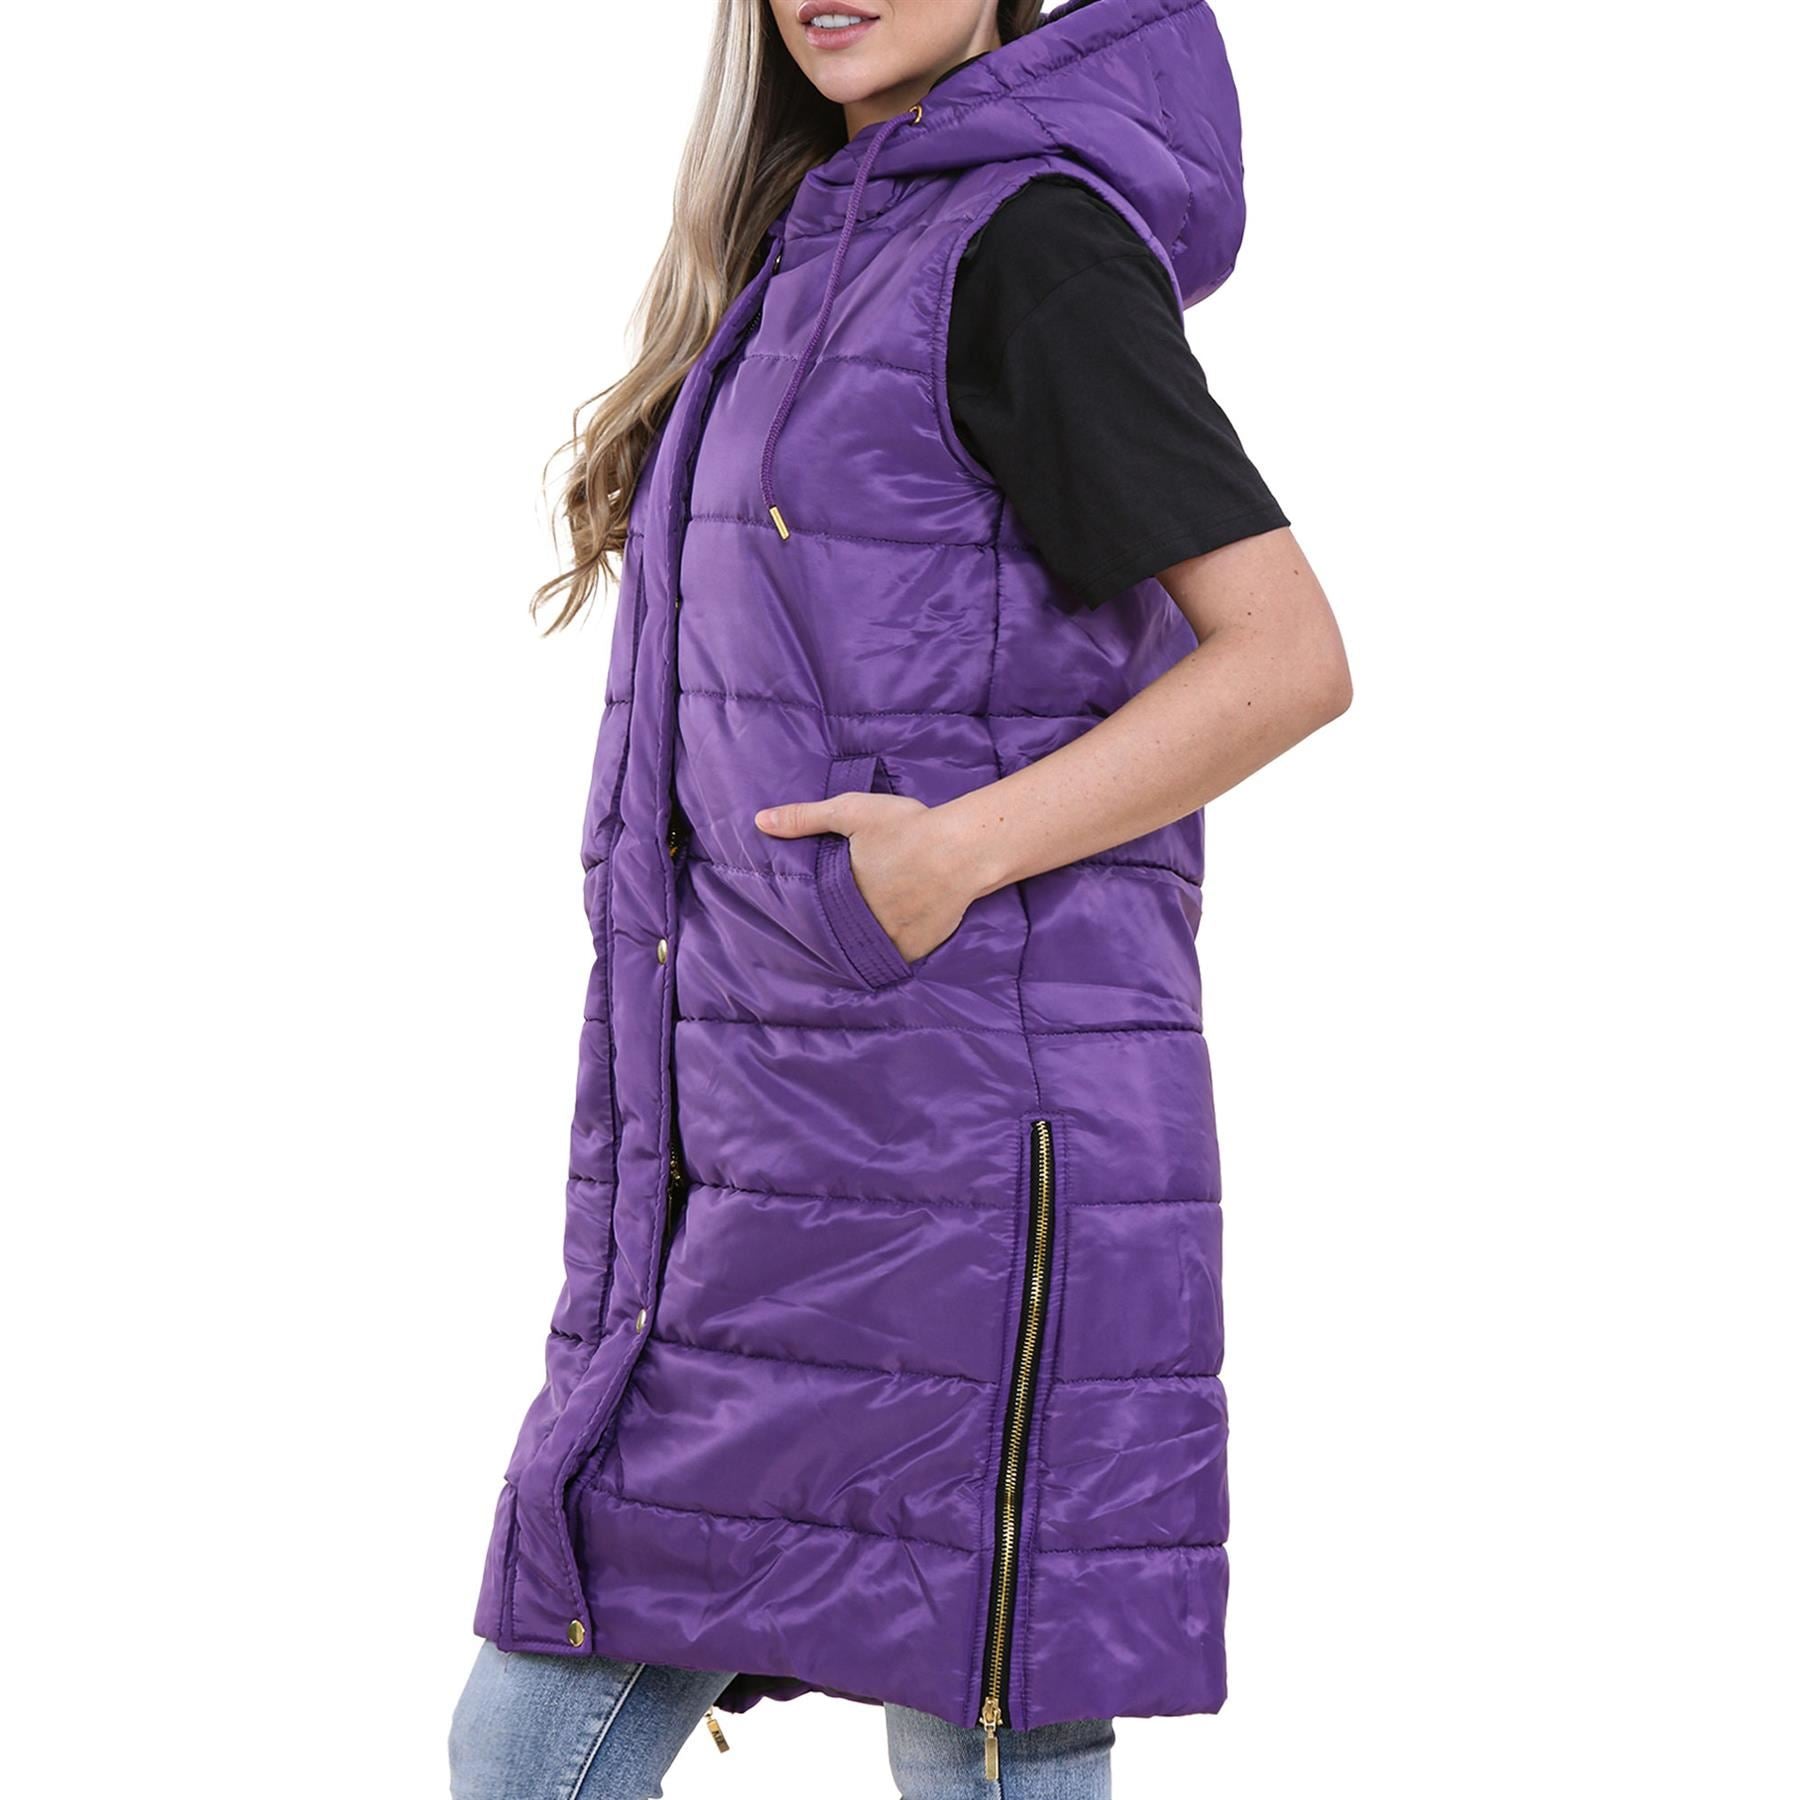 Ladies Oversized Gilet Sleeveless Fashion Purple Jackets